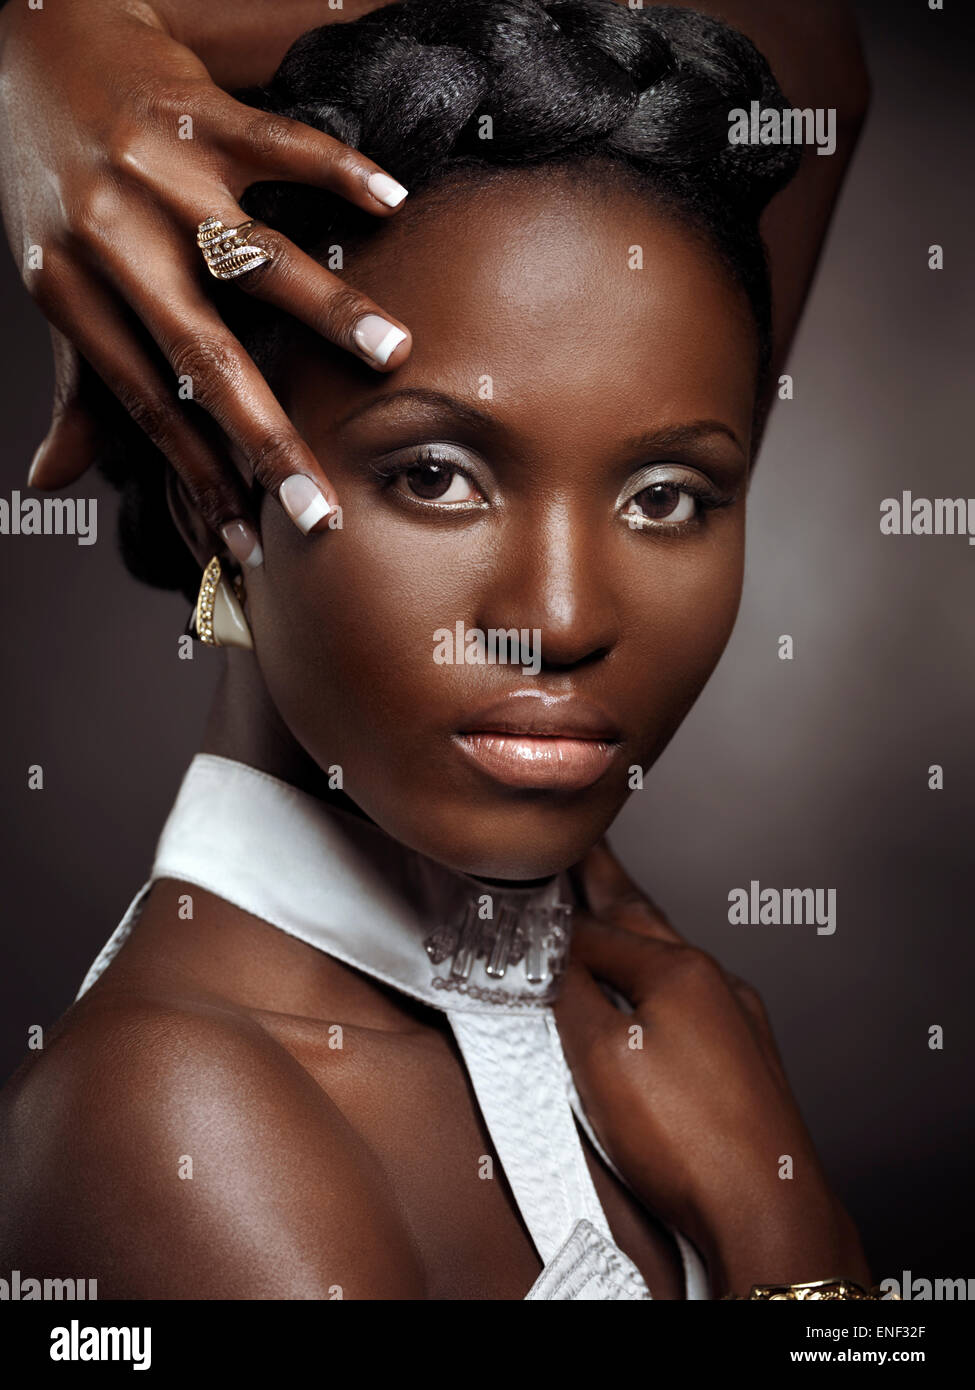 Licenza e stampe a MaximImages.com - ritratto artistico espressivo di un bel volto nero afro-americano donna Foto Stock